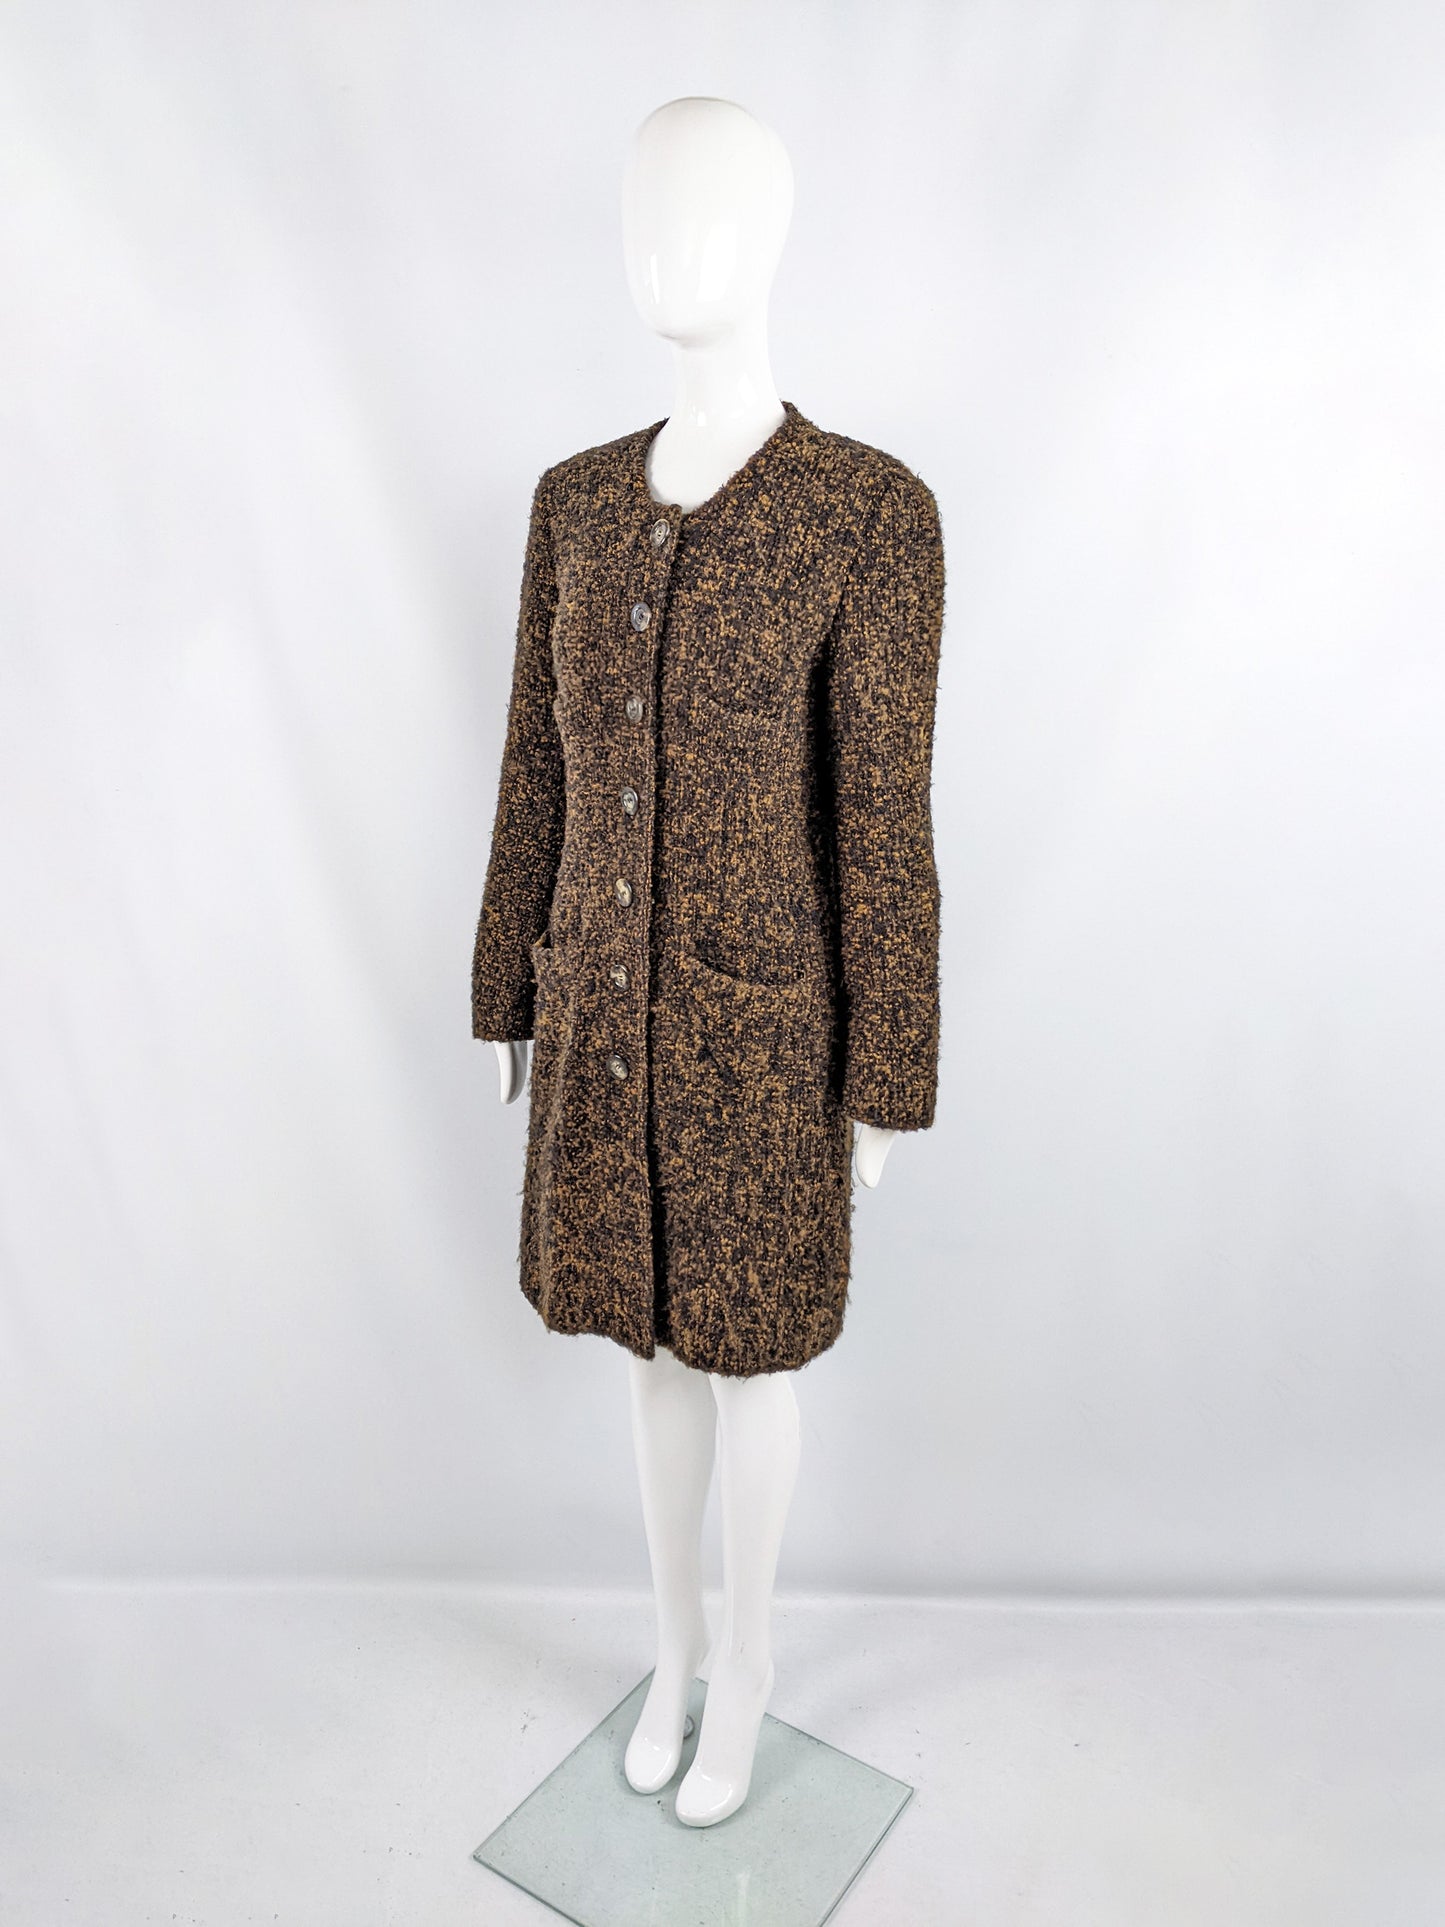 Sonia Rykiel Vintage Brown & Black Tweed Coat, 1980s